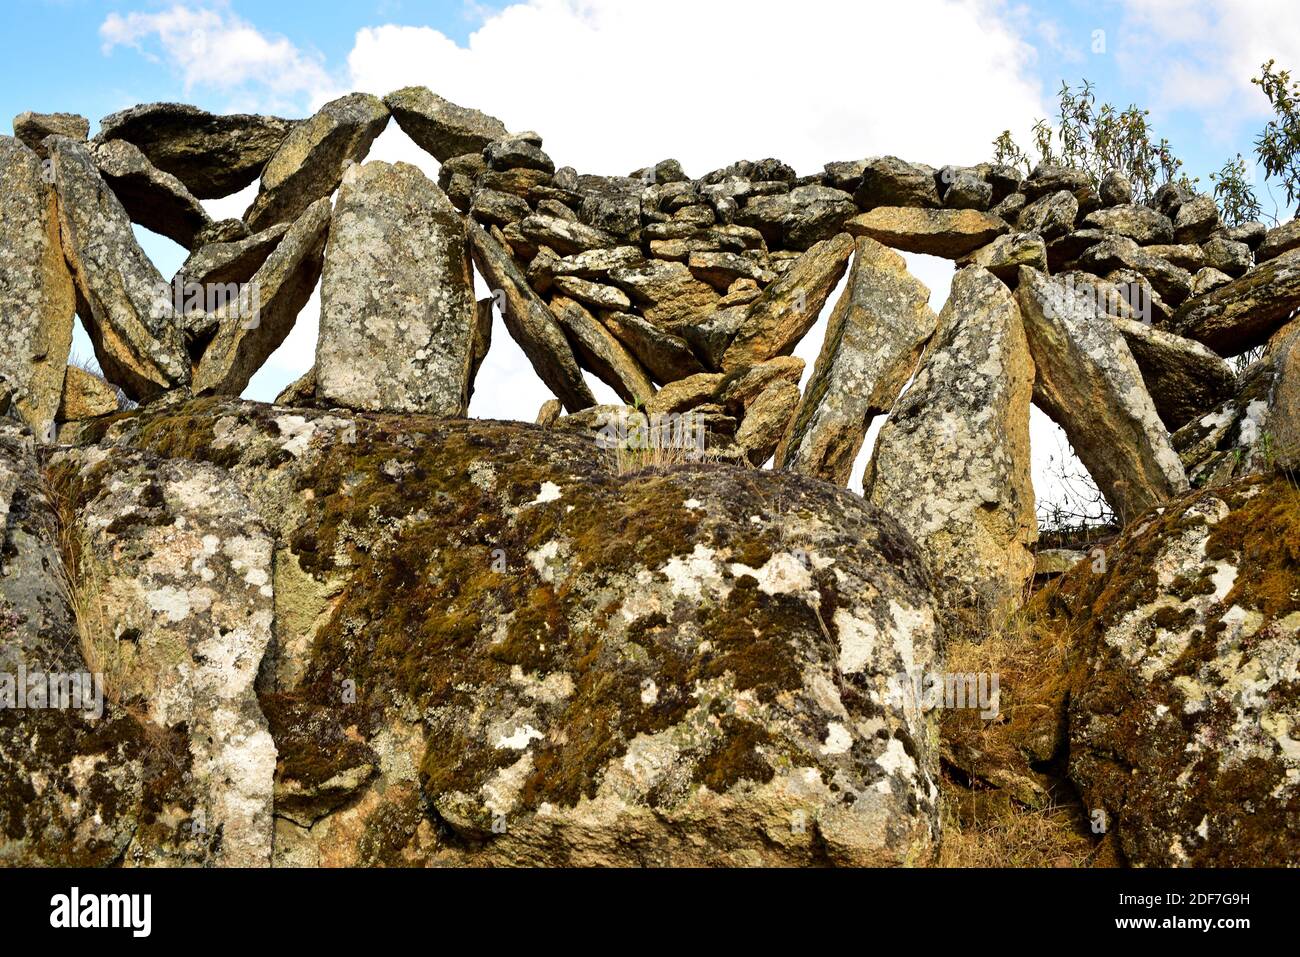 Muro di pietra a secco. Sayago, provincia di Zamora, Castilla y Leon, Spagna. Foto Stock